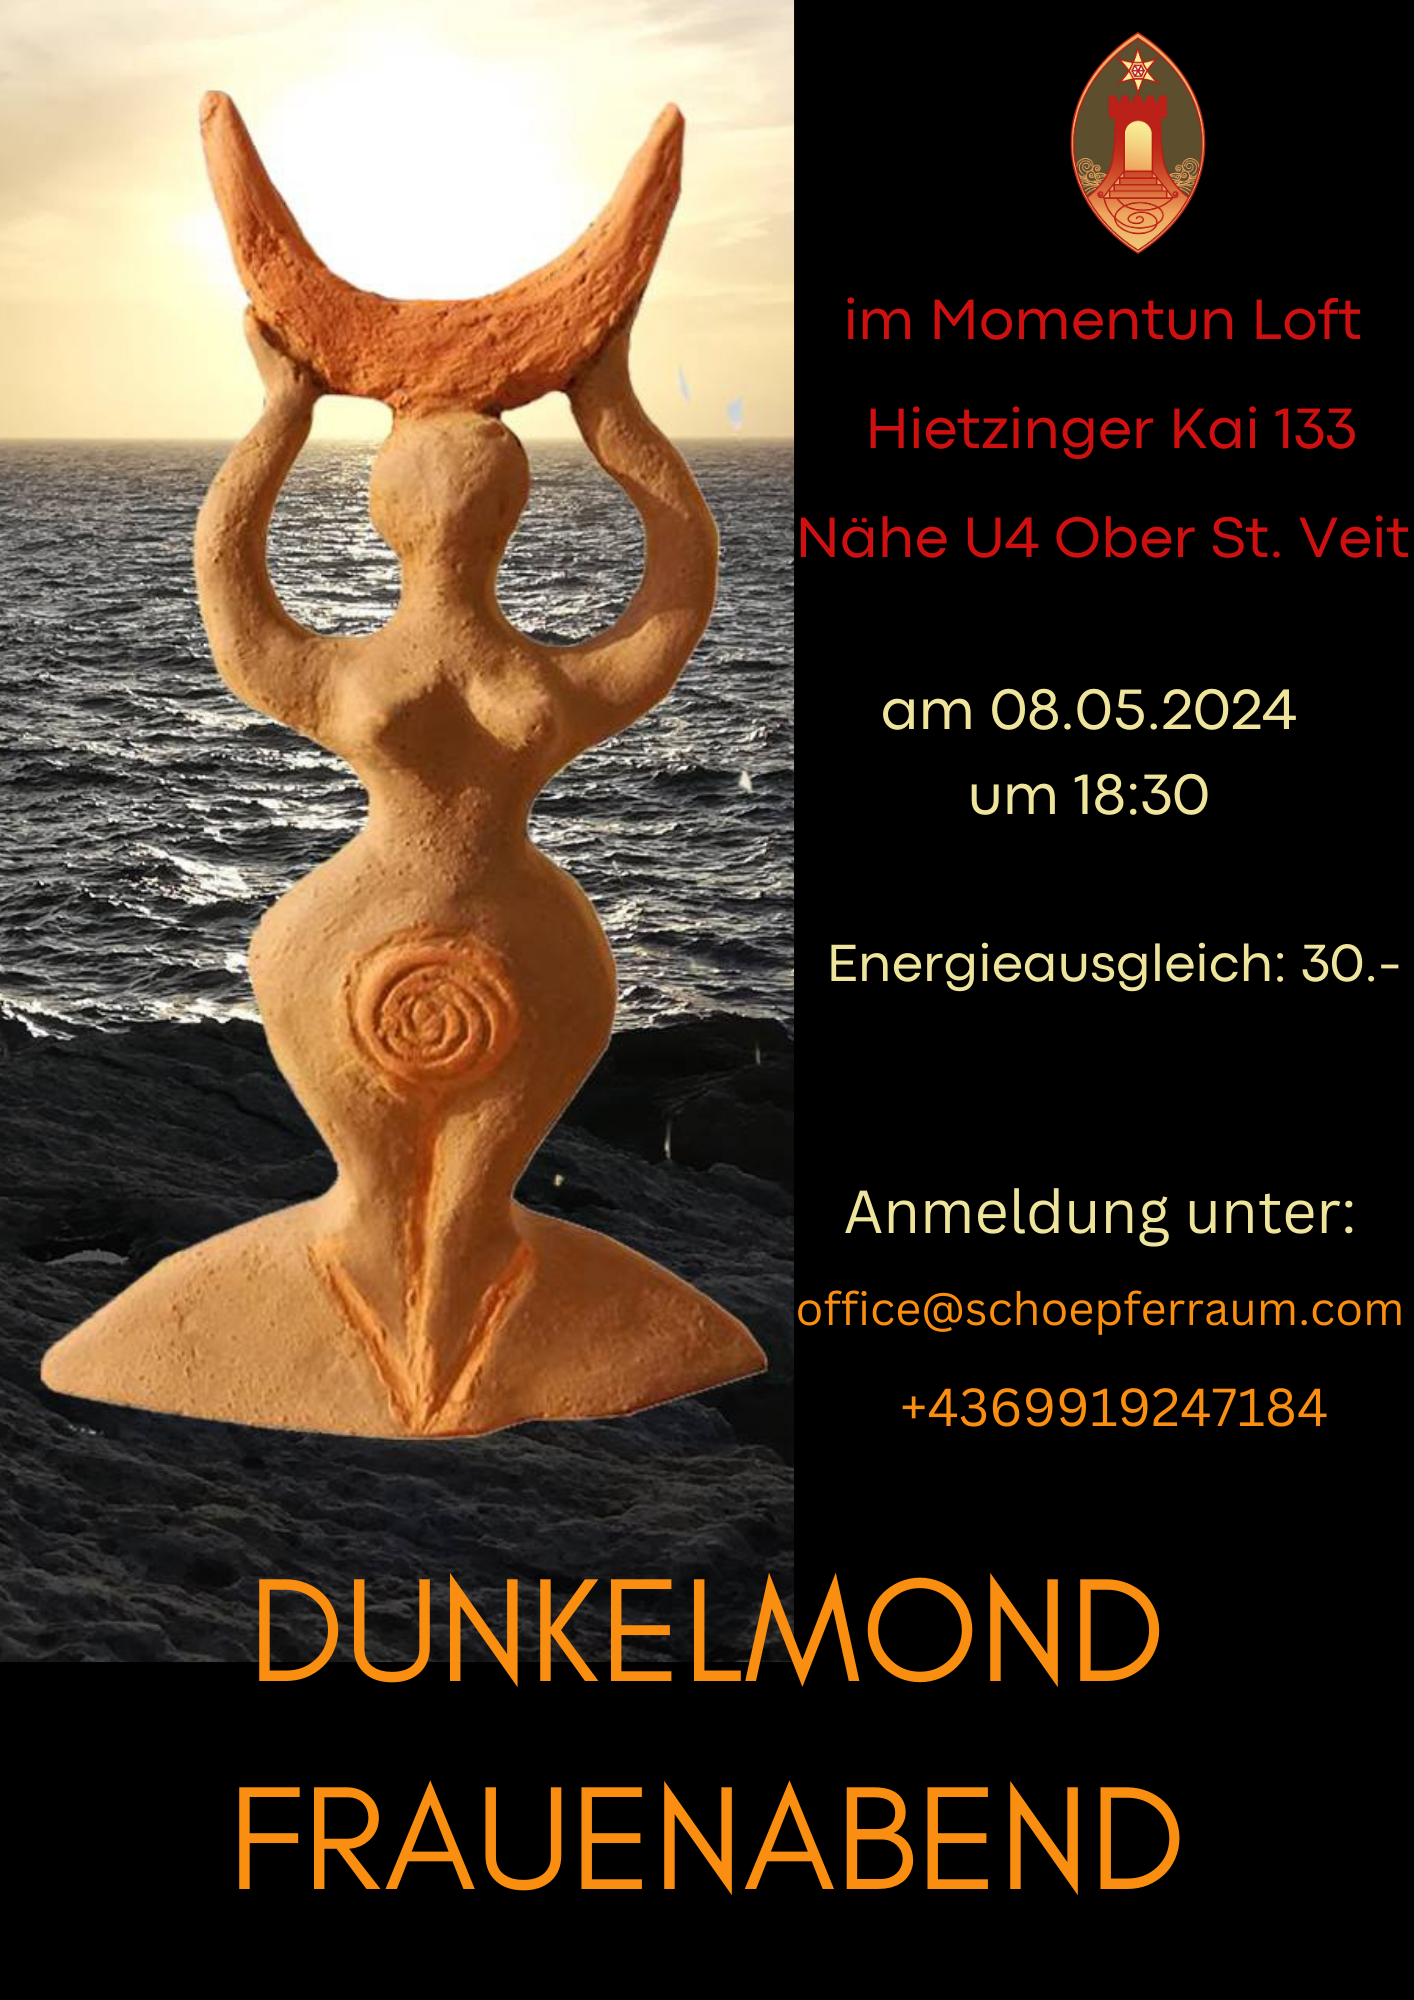 Flyer für Dunkelmondfrauenabend am 8.5.2024